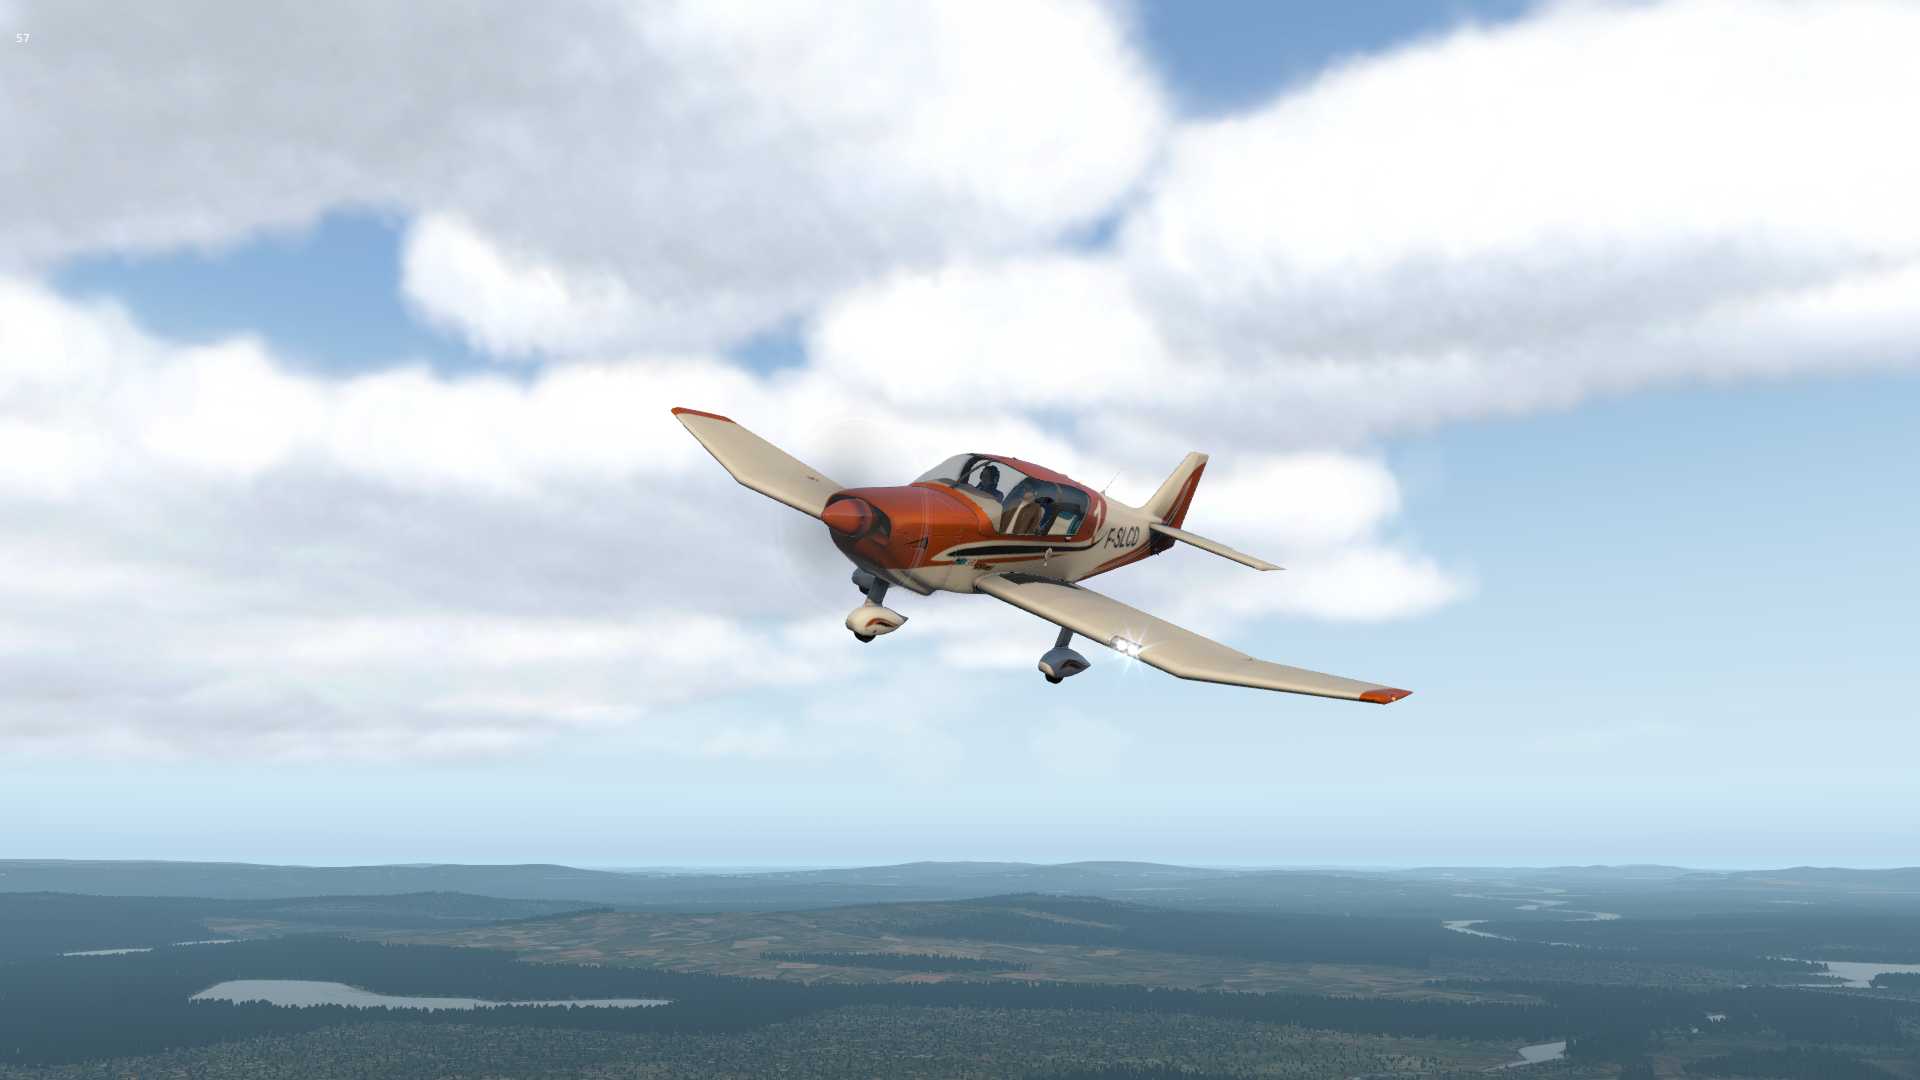 【X-Plane11】Sveg（ESND)上空的Robin-4781 